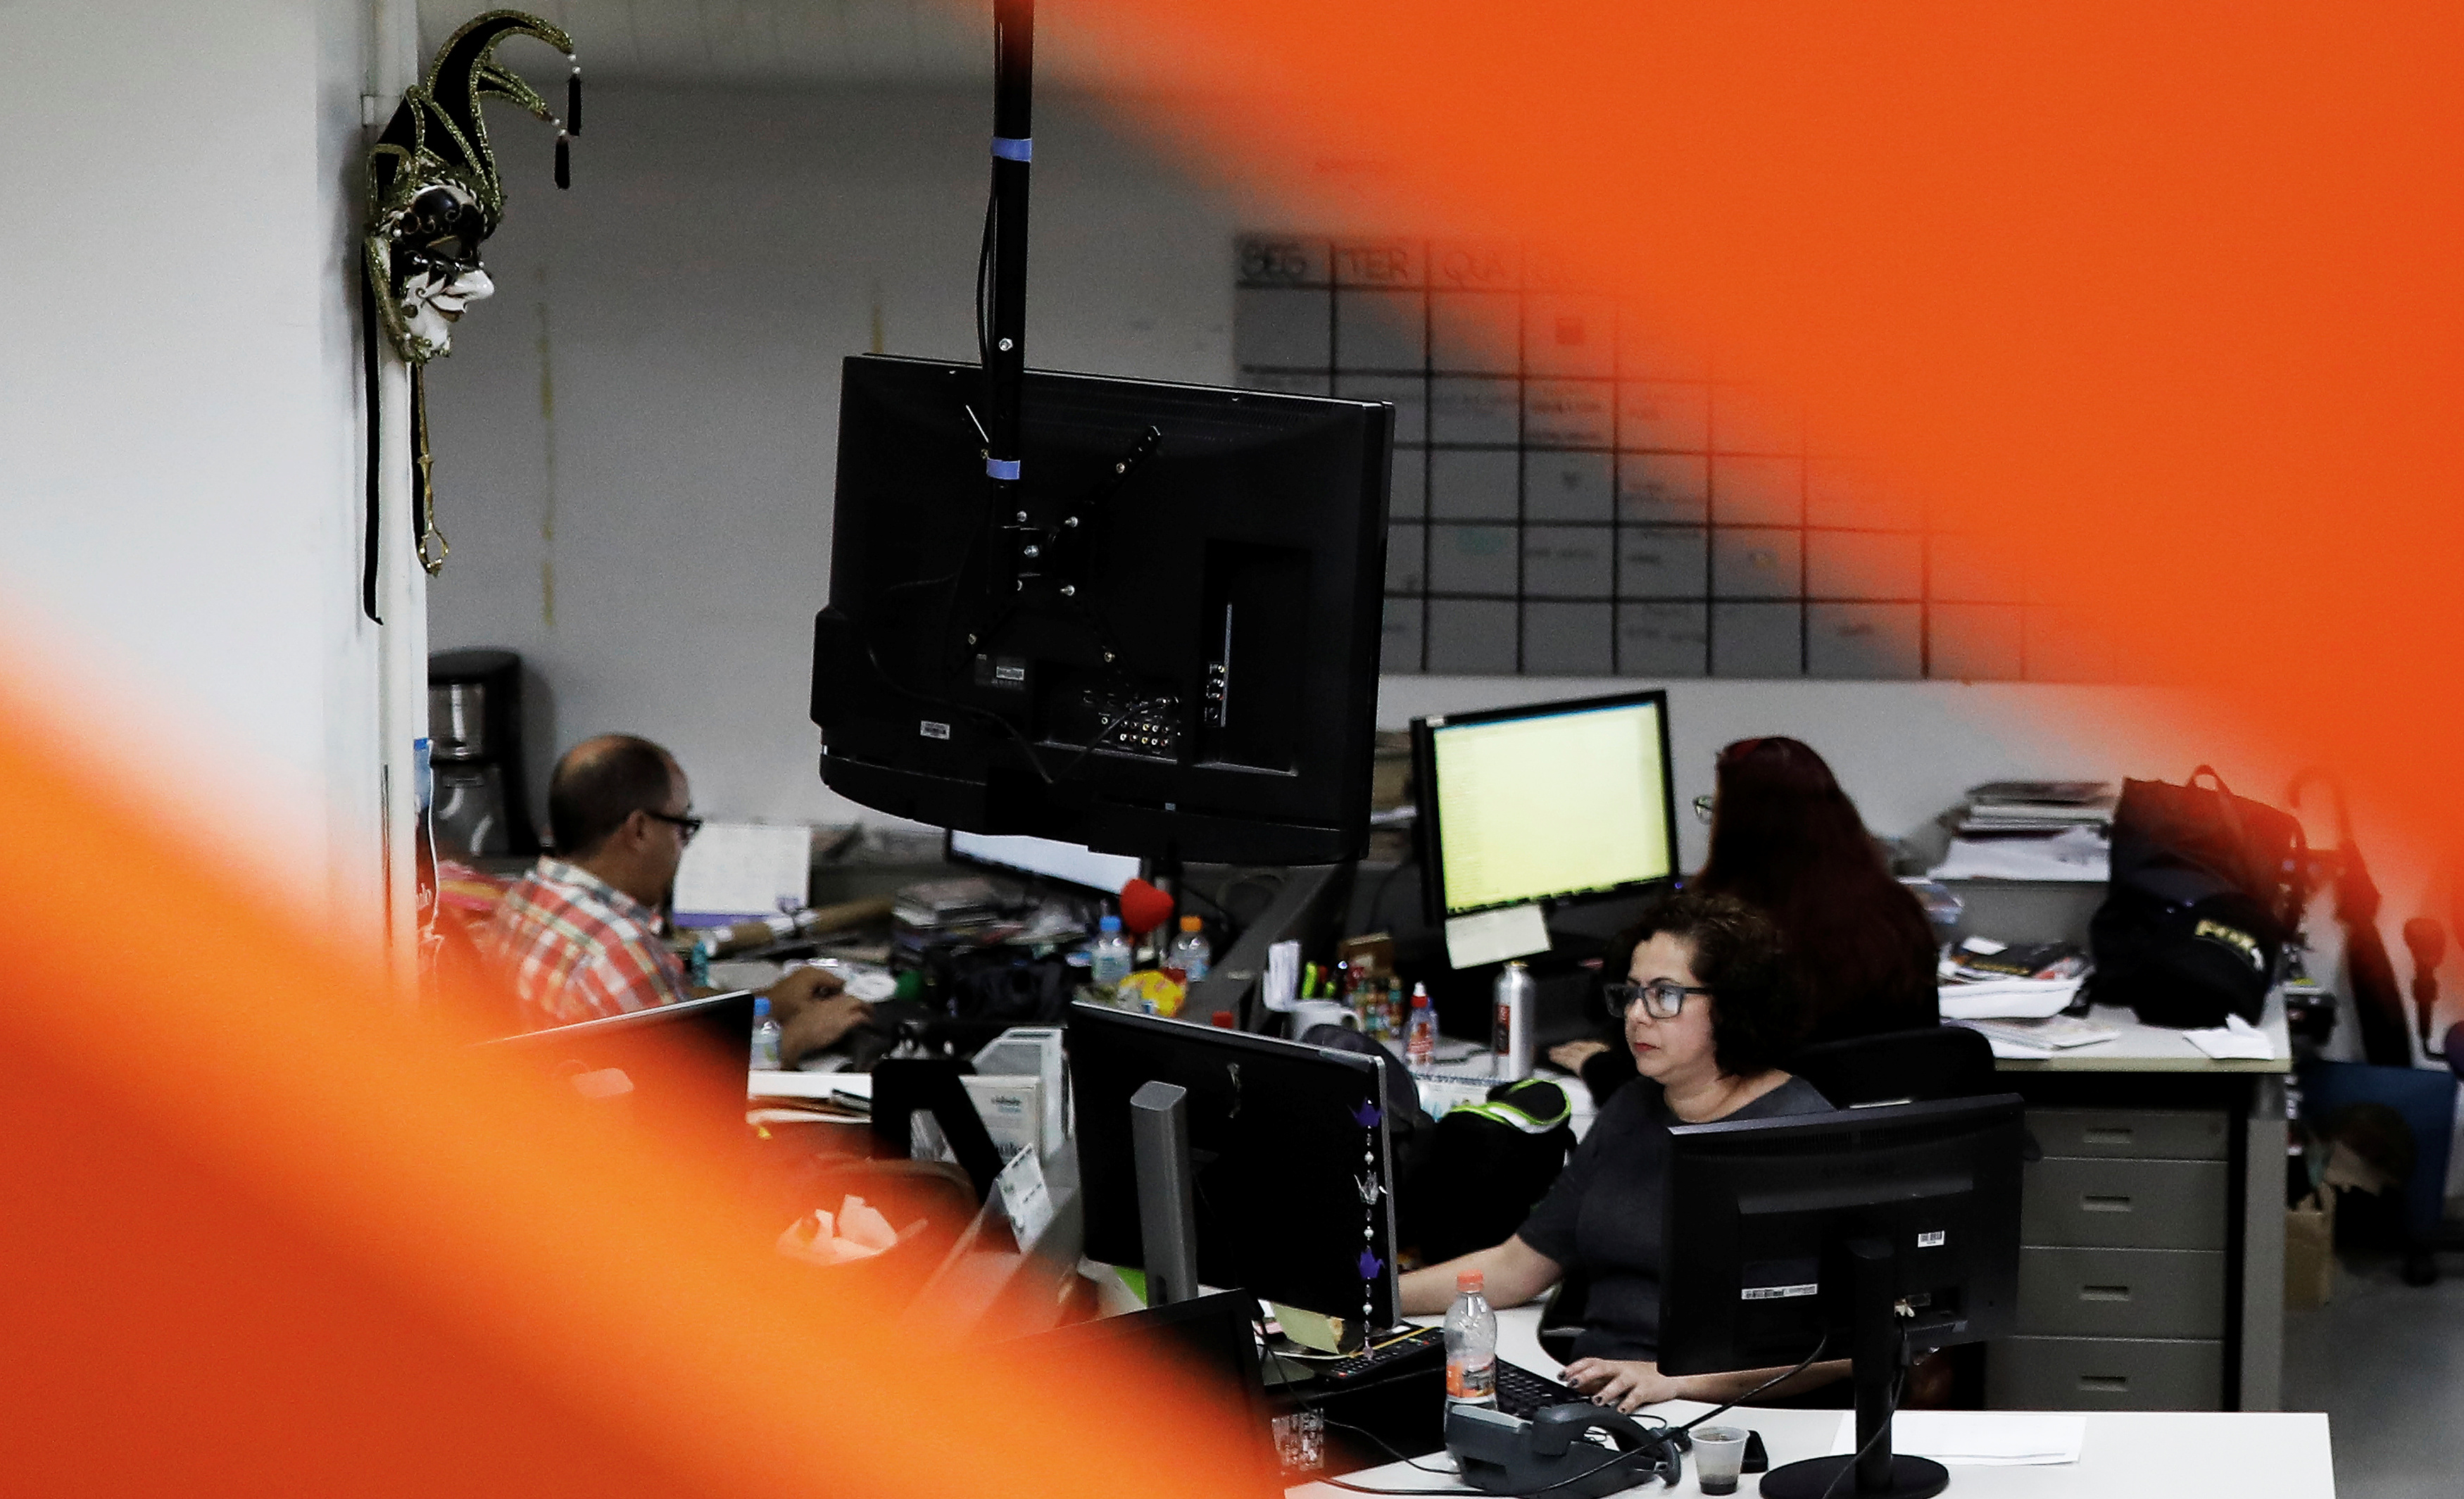 Jornalistas na redação do jornal Folha de S. Paulo. REUTERS/Nacho Doce